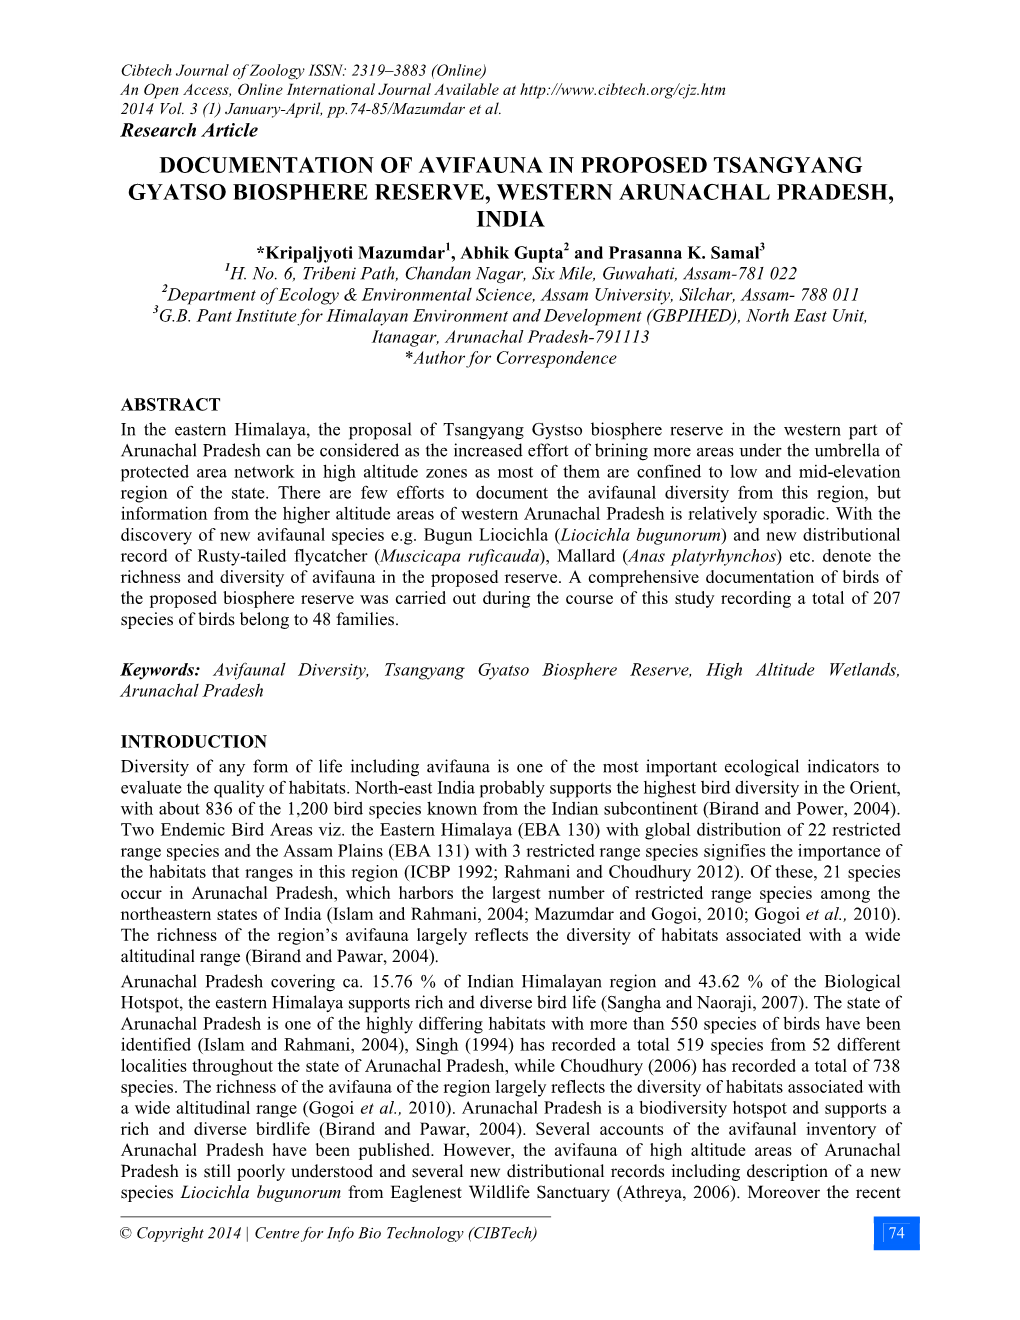 DOCUMENTATION of AVIFAUNA in PROPOSED TSANGYANG GYATSO BIOSPHERE RESERVE, WESTERN ARUNACHAL PRADESH, INDIA *Kripaljyoti Mazumdar1, Abhik Gupta2 and Prasanna K